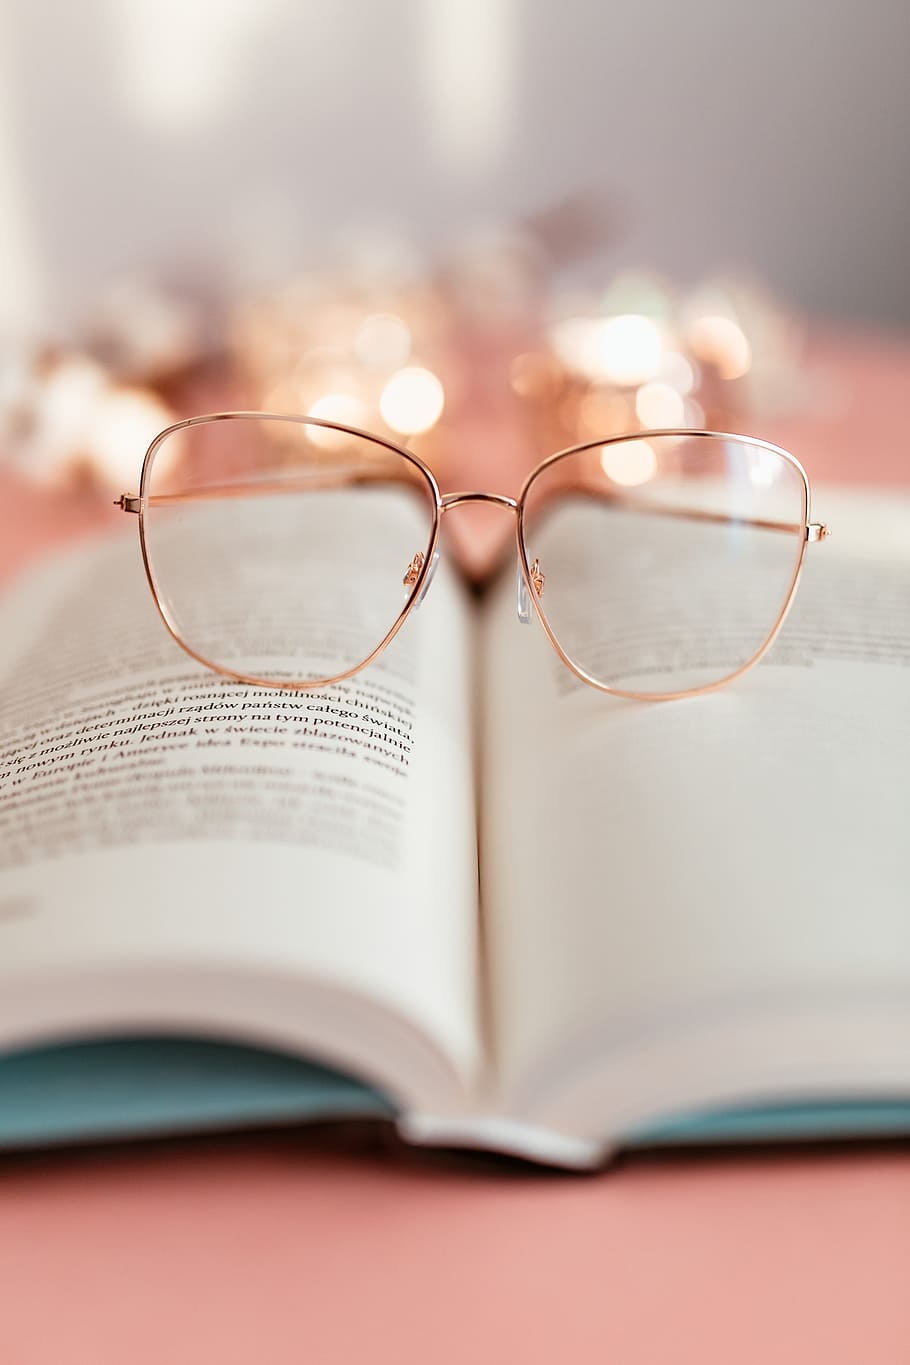 aberto, livro, rosa, fundo, leitura, óculos, aprendizagem, fundo rosa, estudo, feminino